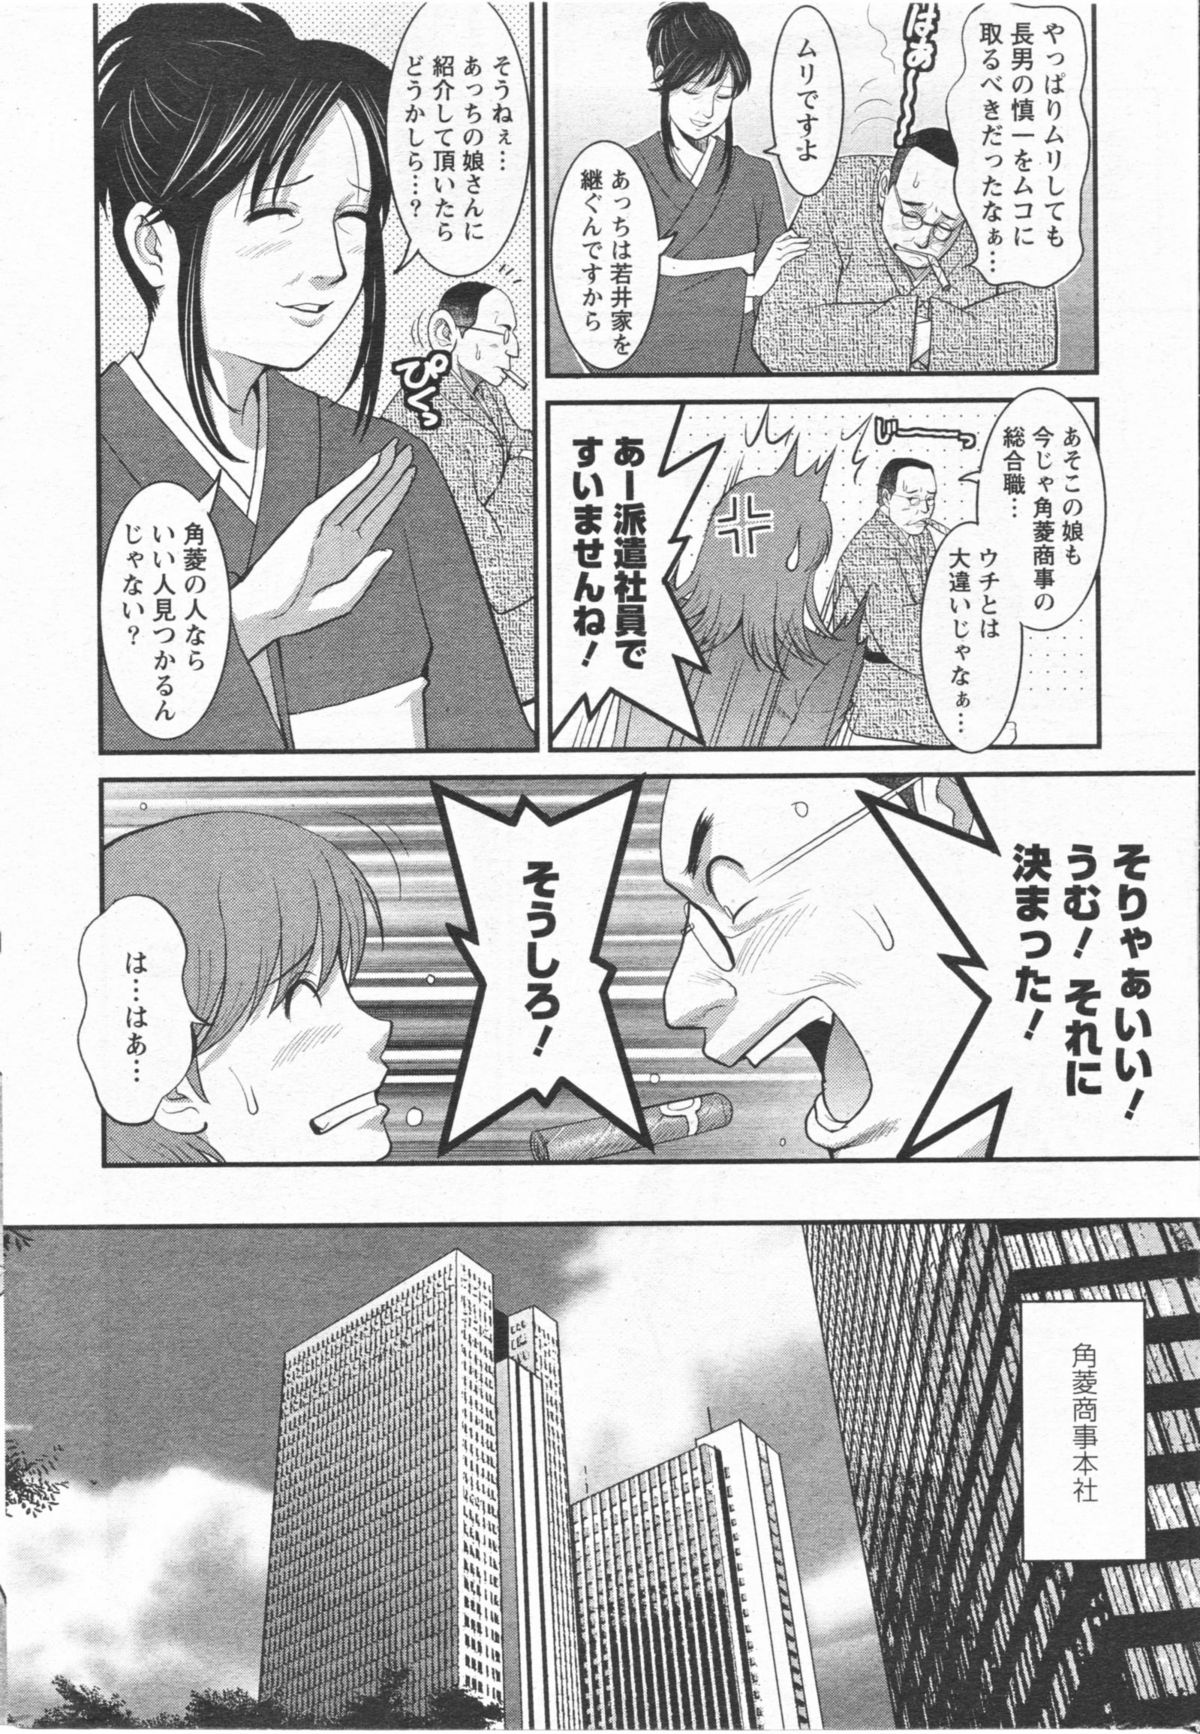 [Saigado] Haken no Muuko San 11 page 7 full